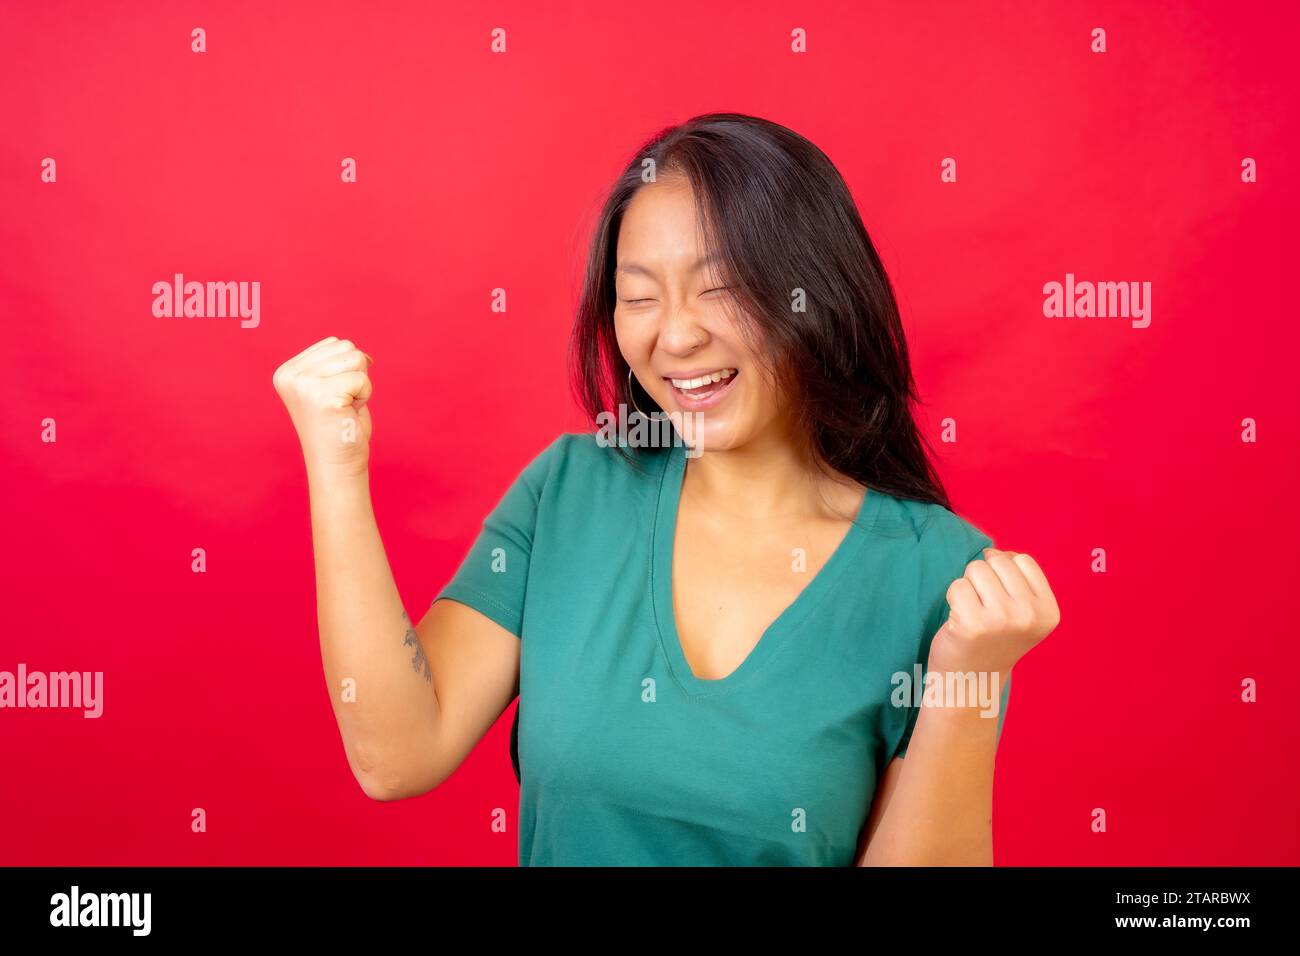 Photo de studio avec fond rouge d'une femme chinoise célébrant lever le poing avec les yeux fermés Banque D'Images